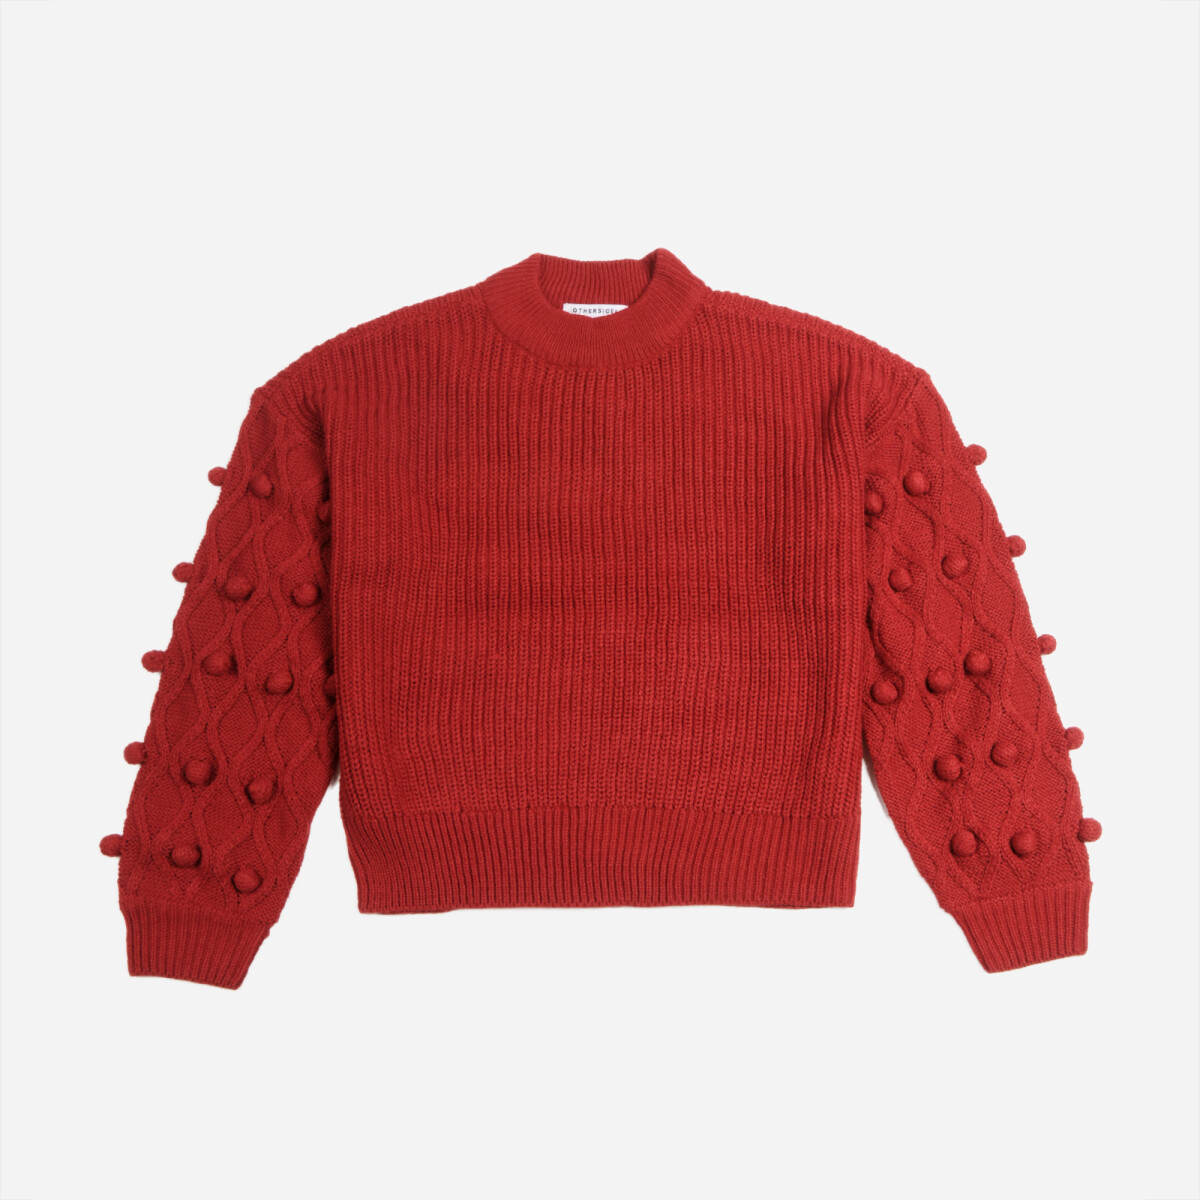 Sweater con estructura en mangas - Mujer - ROJO 